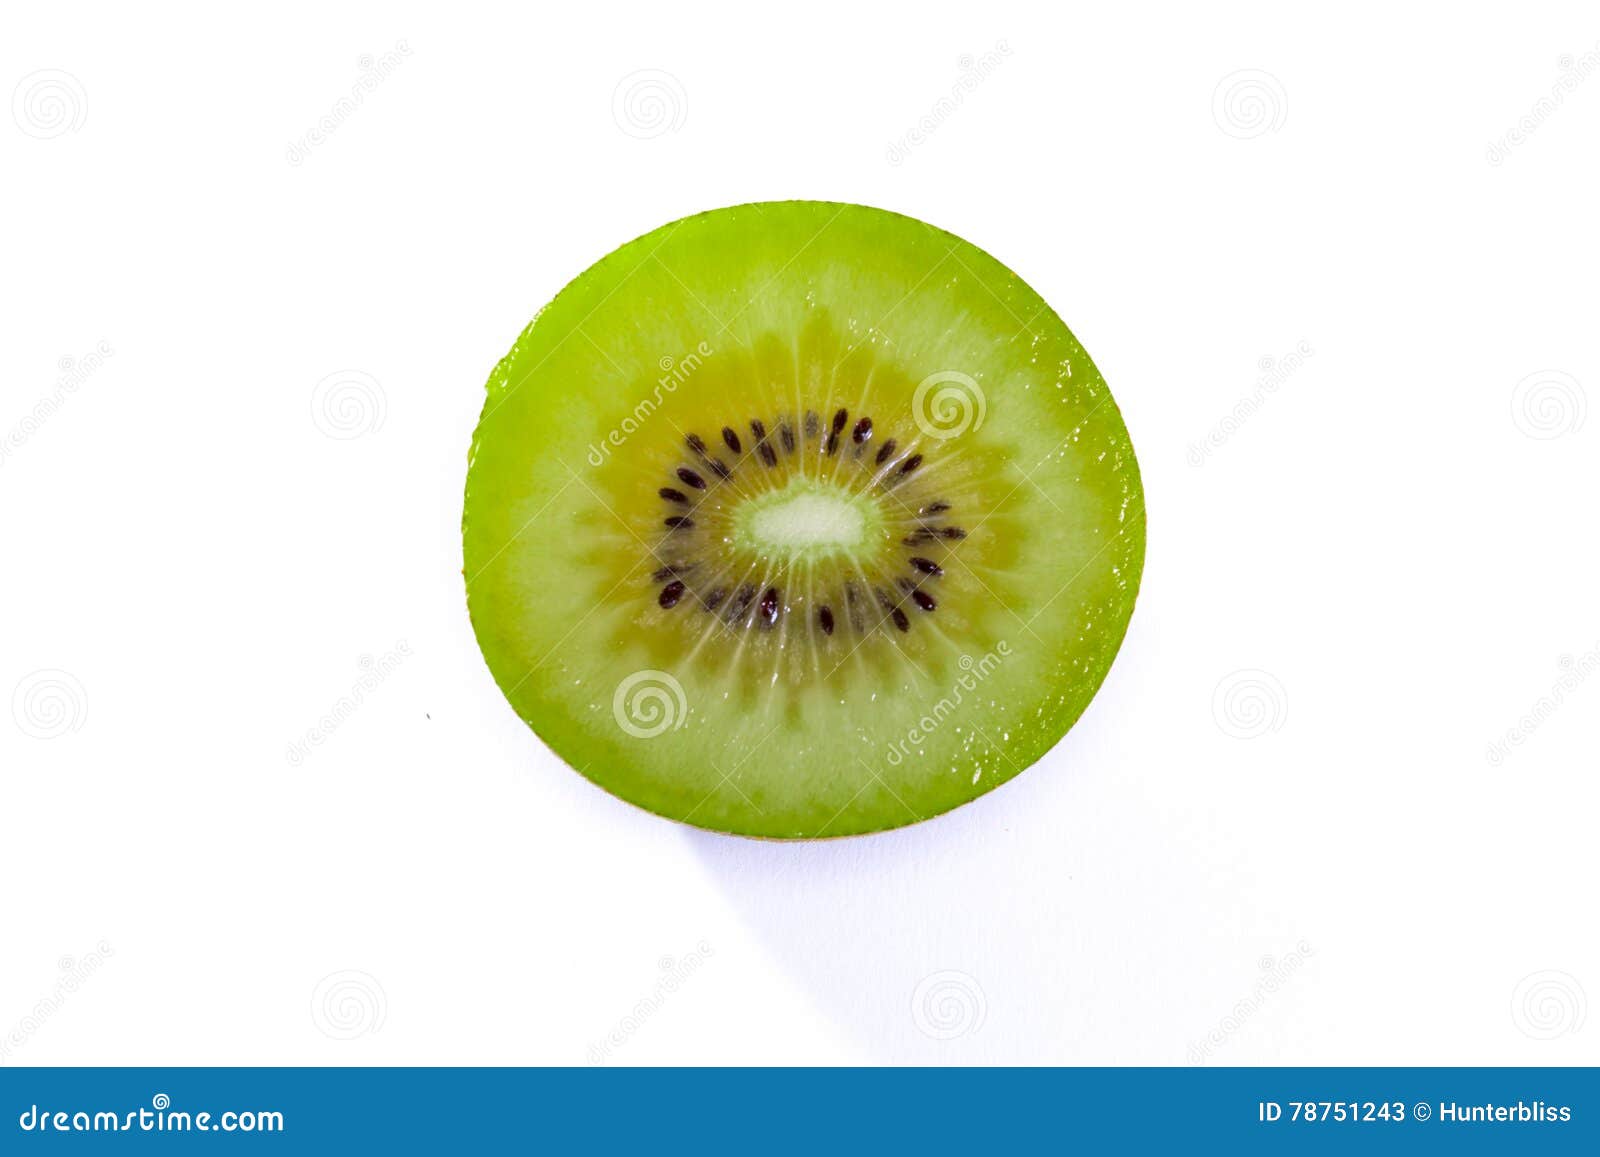 Spanish in kiwi fruit Fruit Names